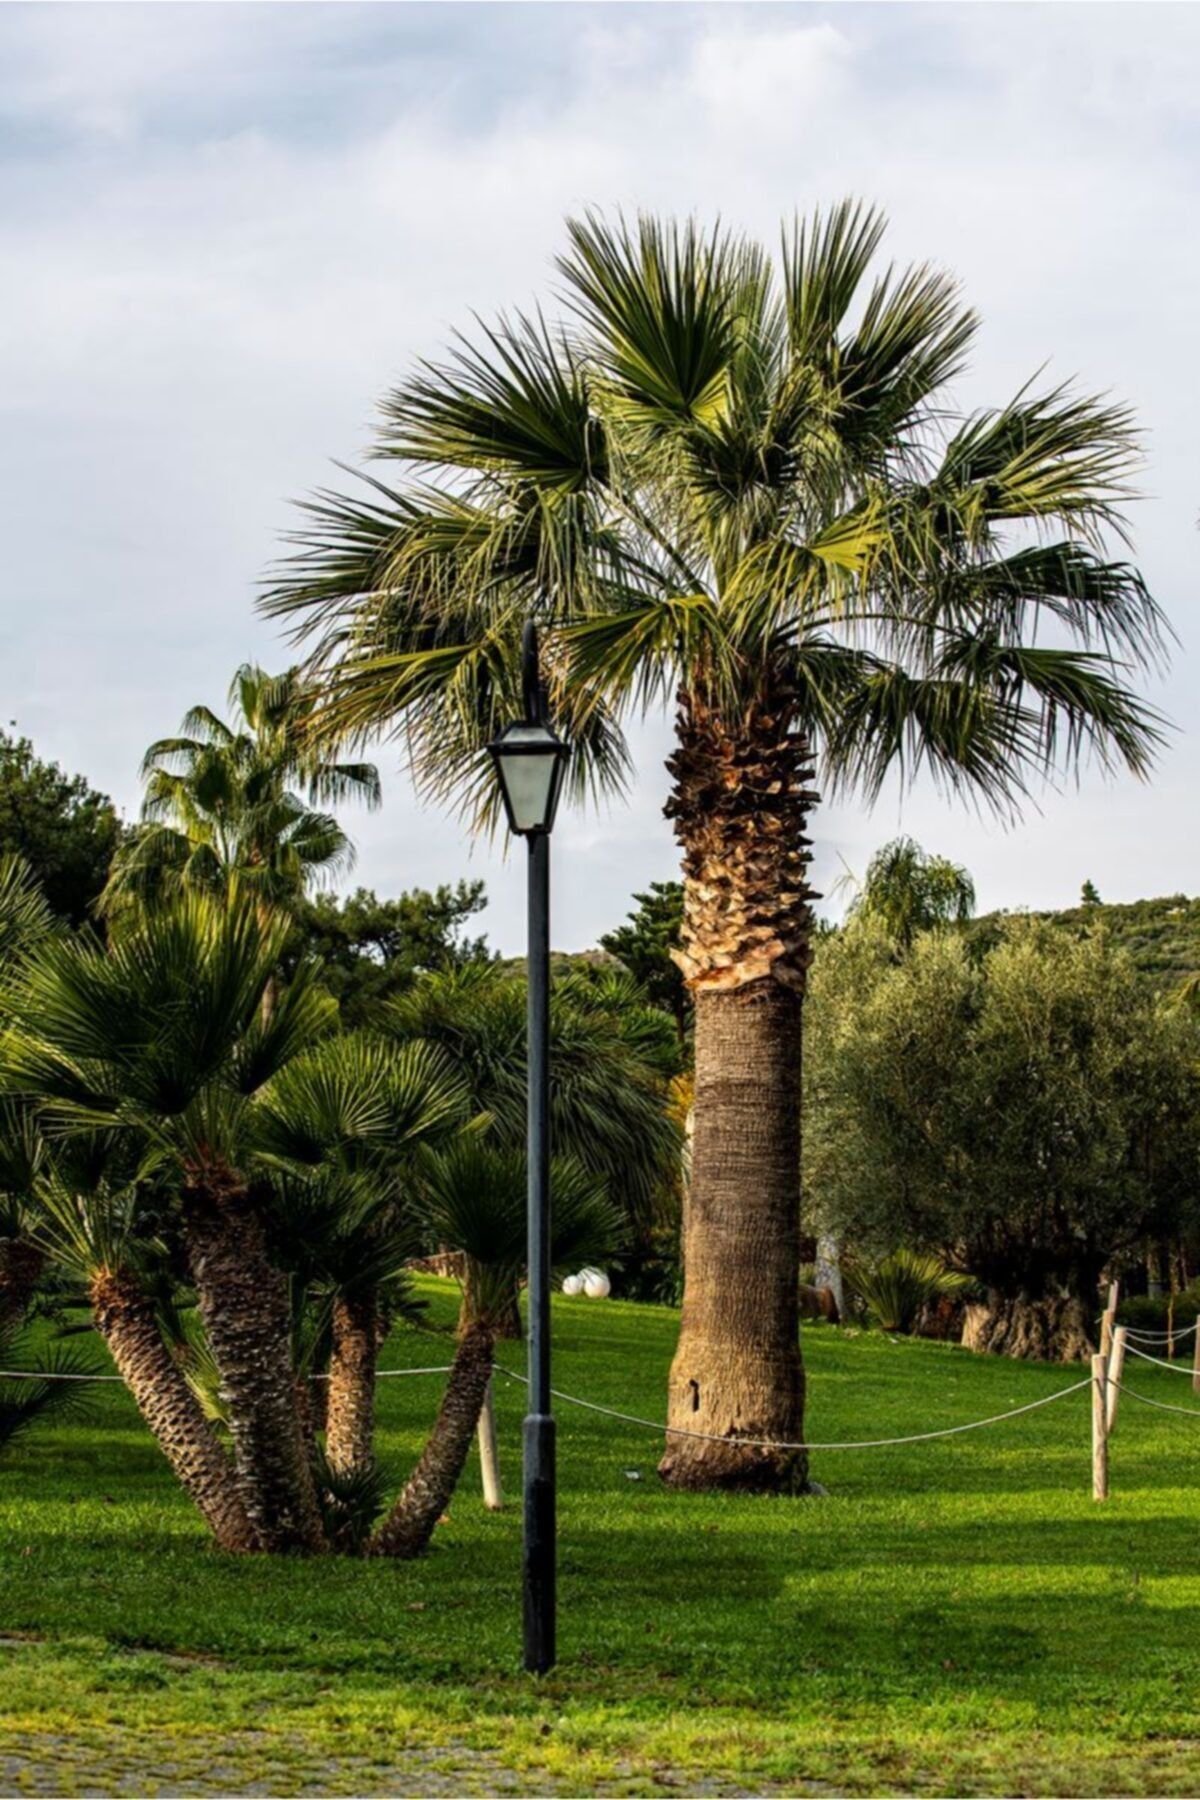 Doğalsan Tarım Palmiye Tohumu 100 gr 1200 Adet Palmiye Ağacı Tohumu Washingtonia Filifera Ağaç Tohumu